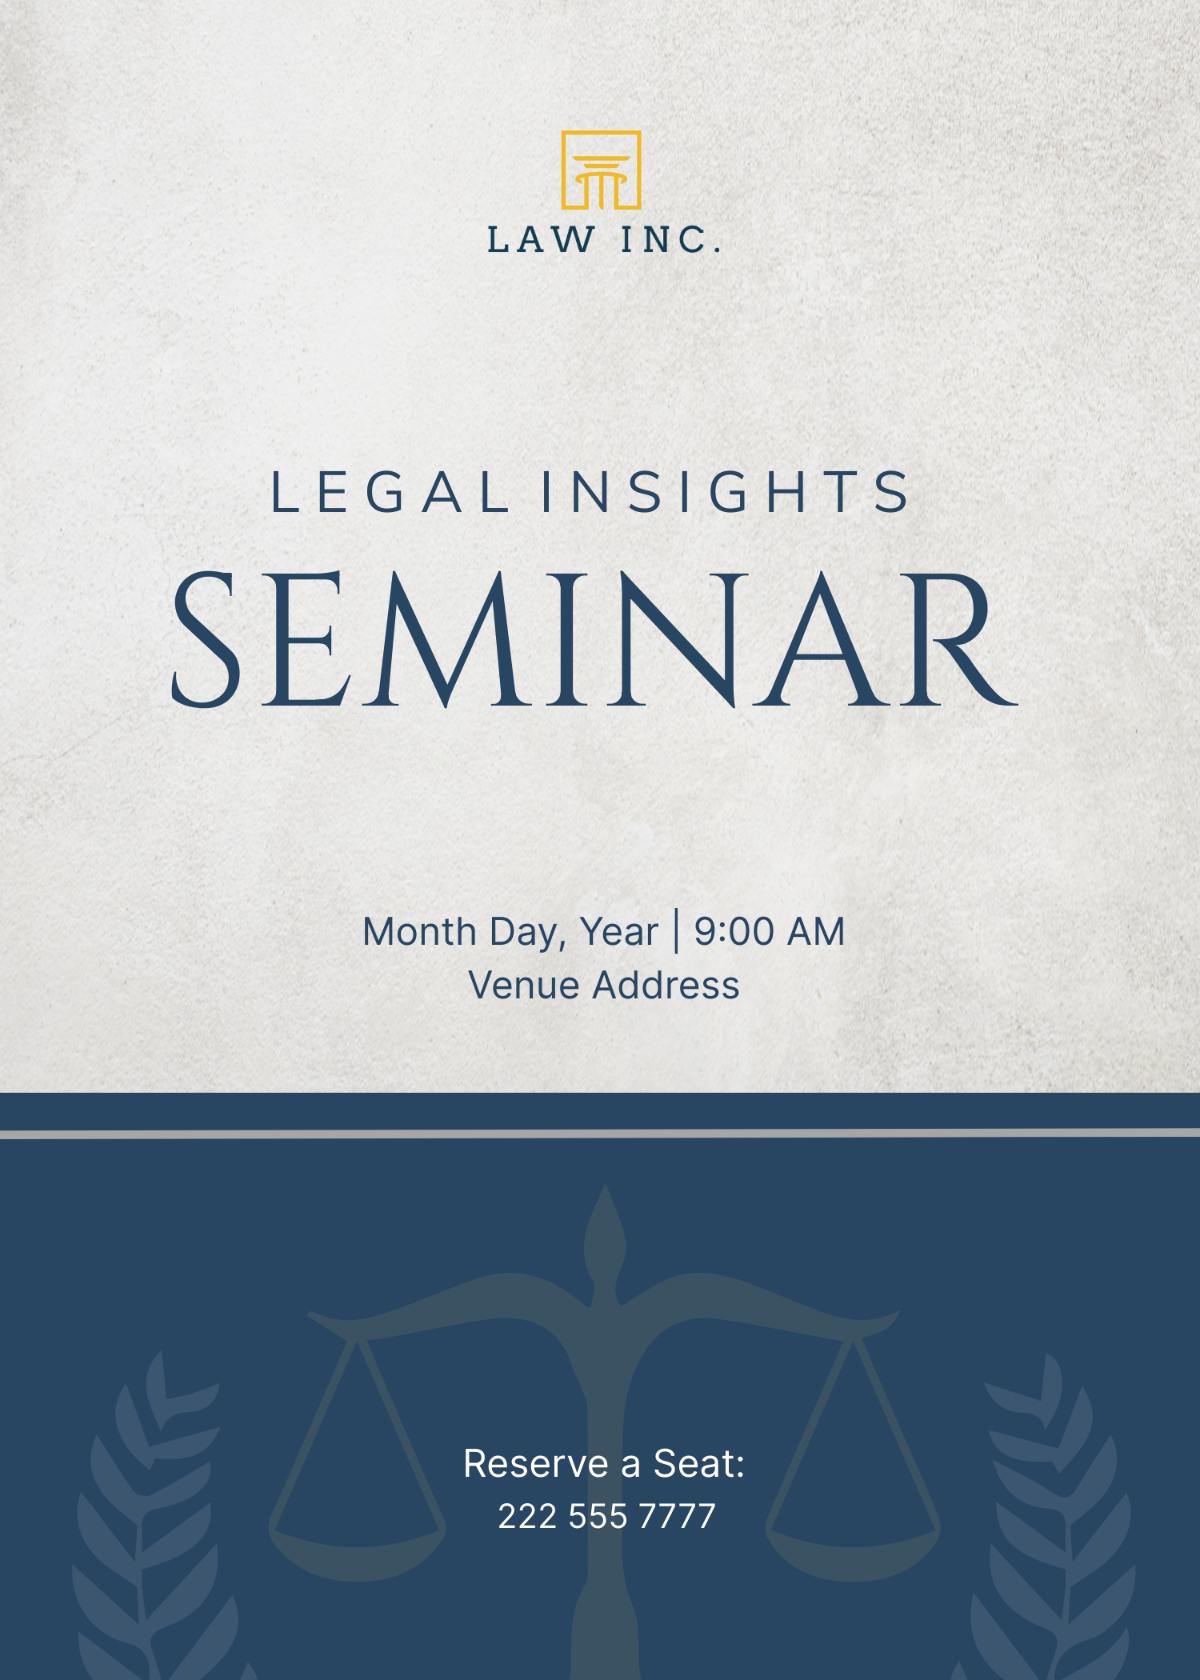 Law Firm Seminar Invitation